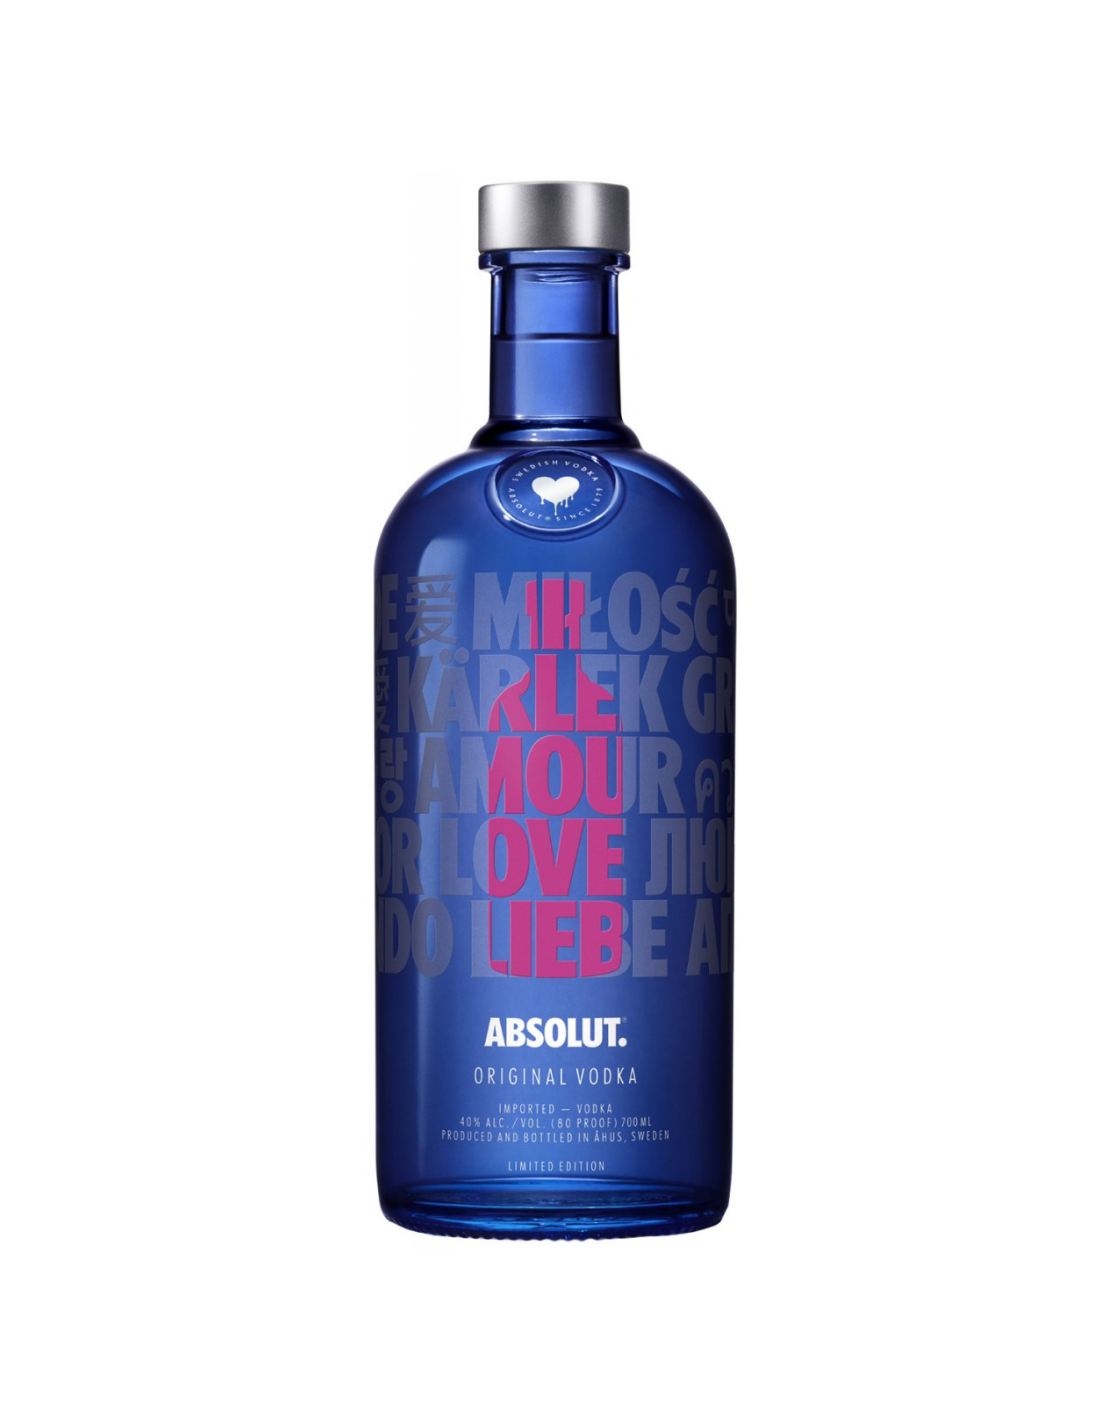 Vodca Absolut Love 40% alc., 0.7L, Suedia alcooldiscount.ro